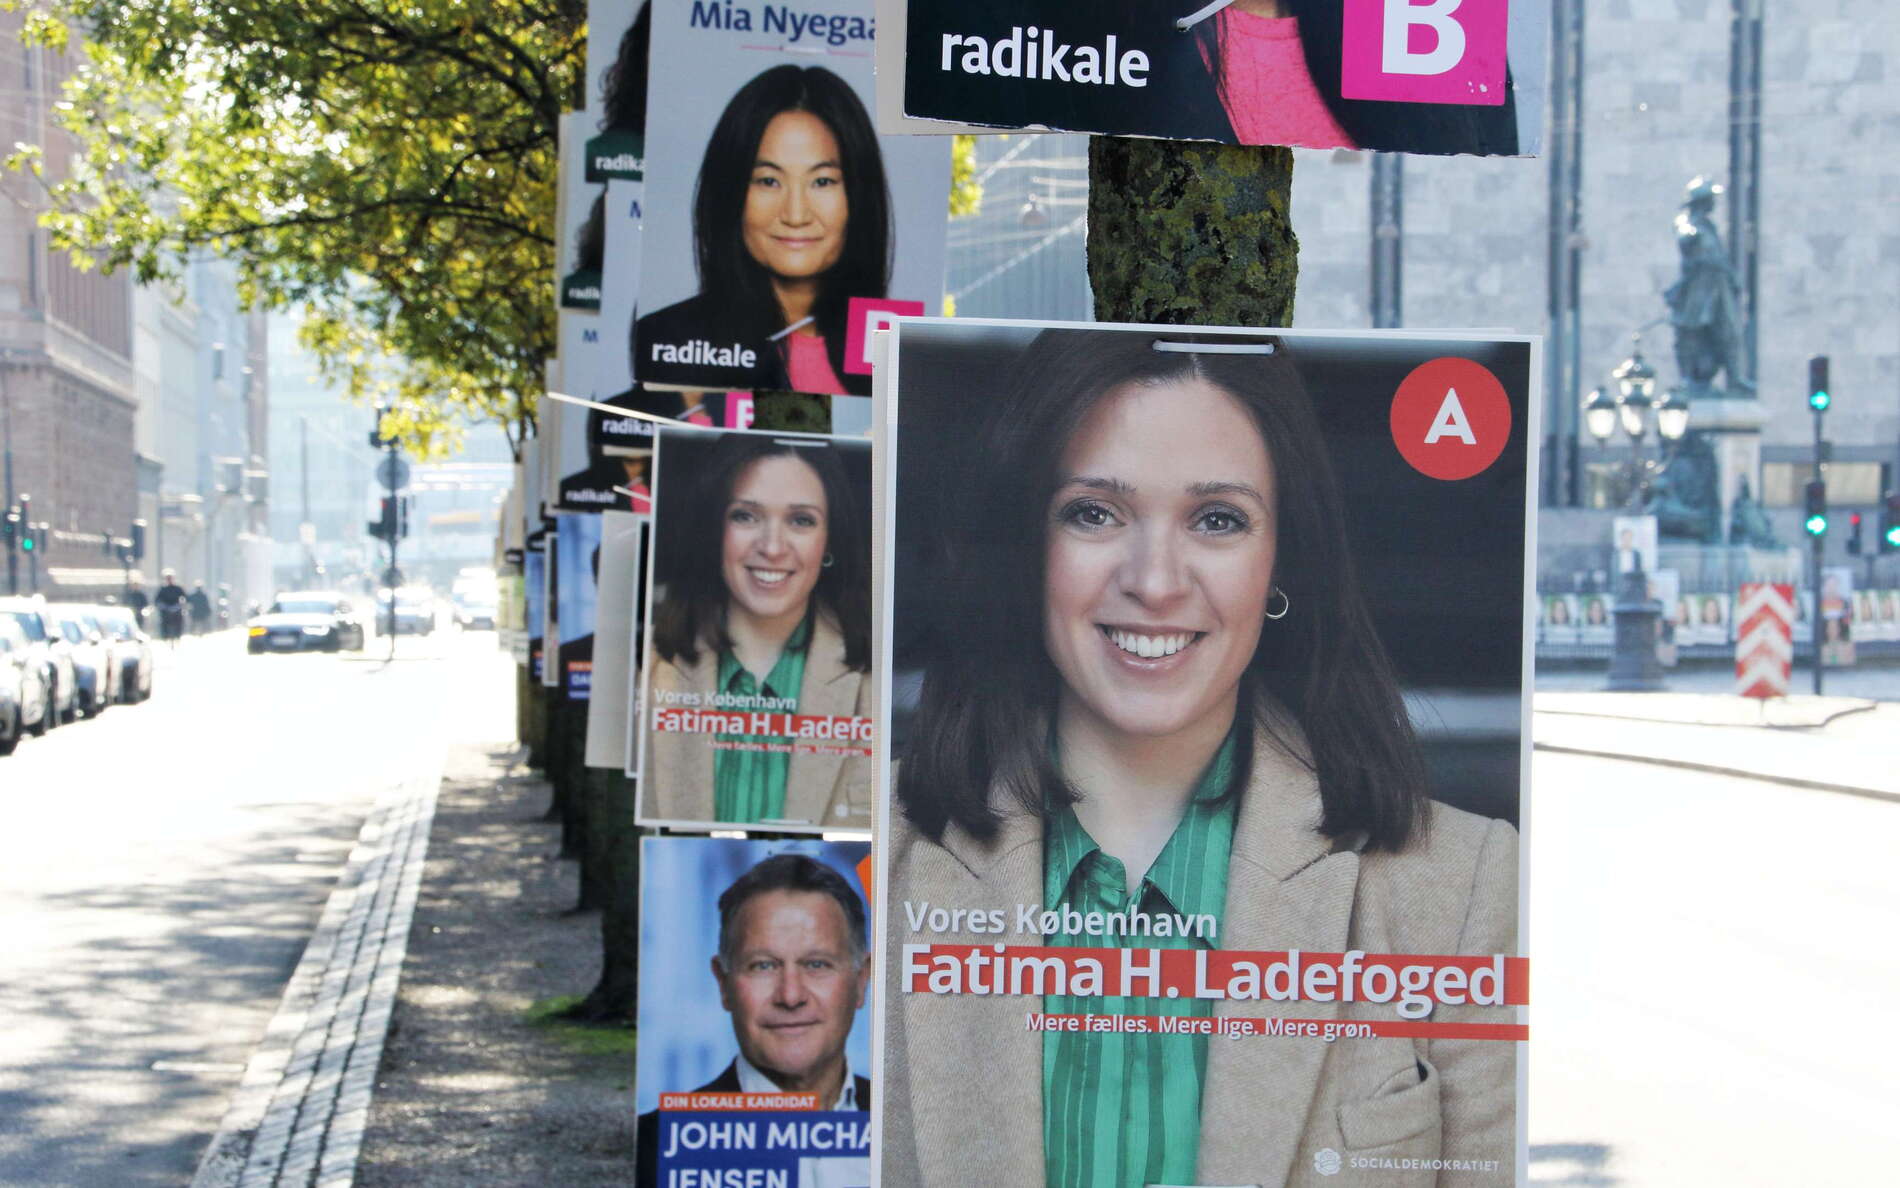 København | Election campaign